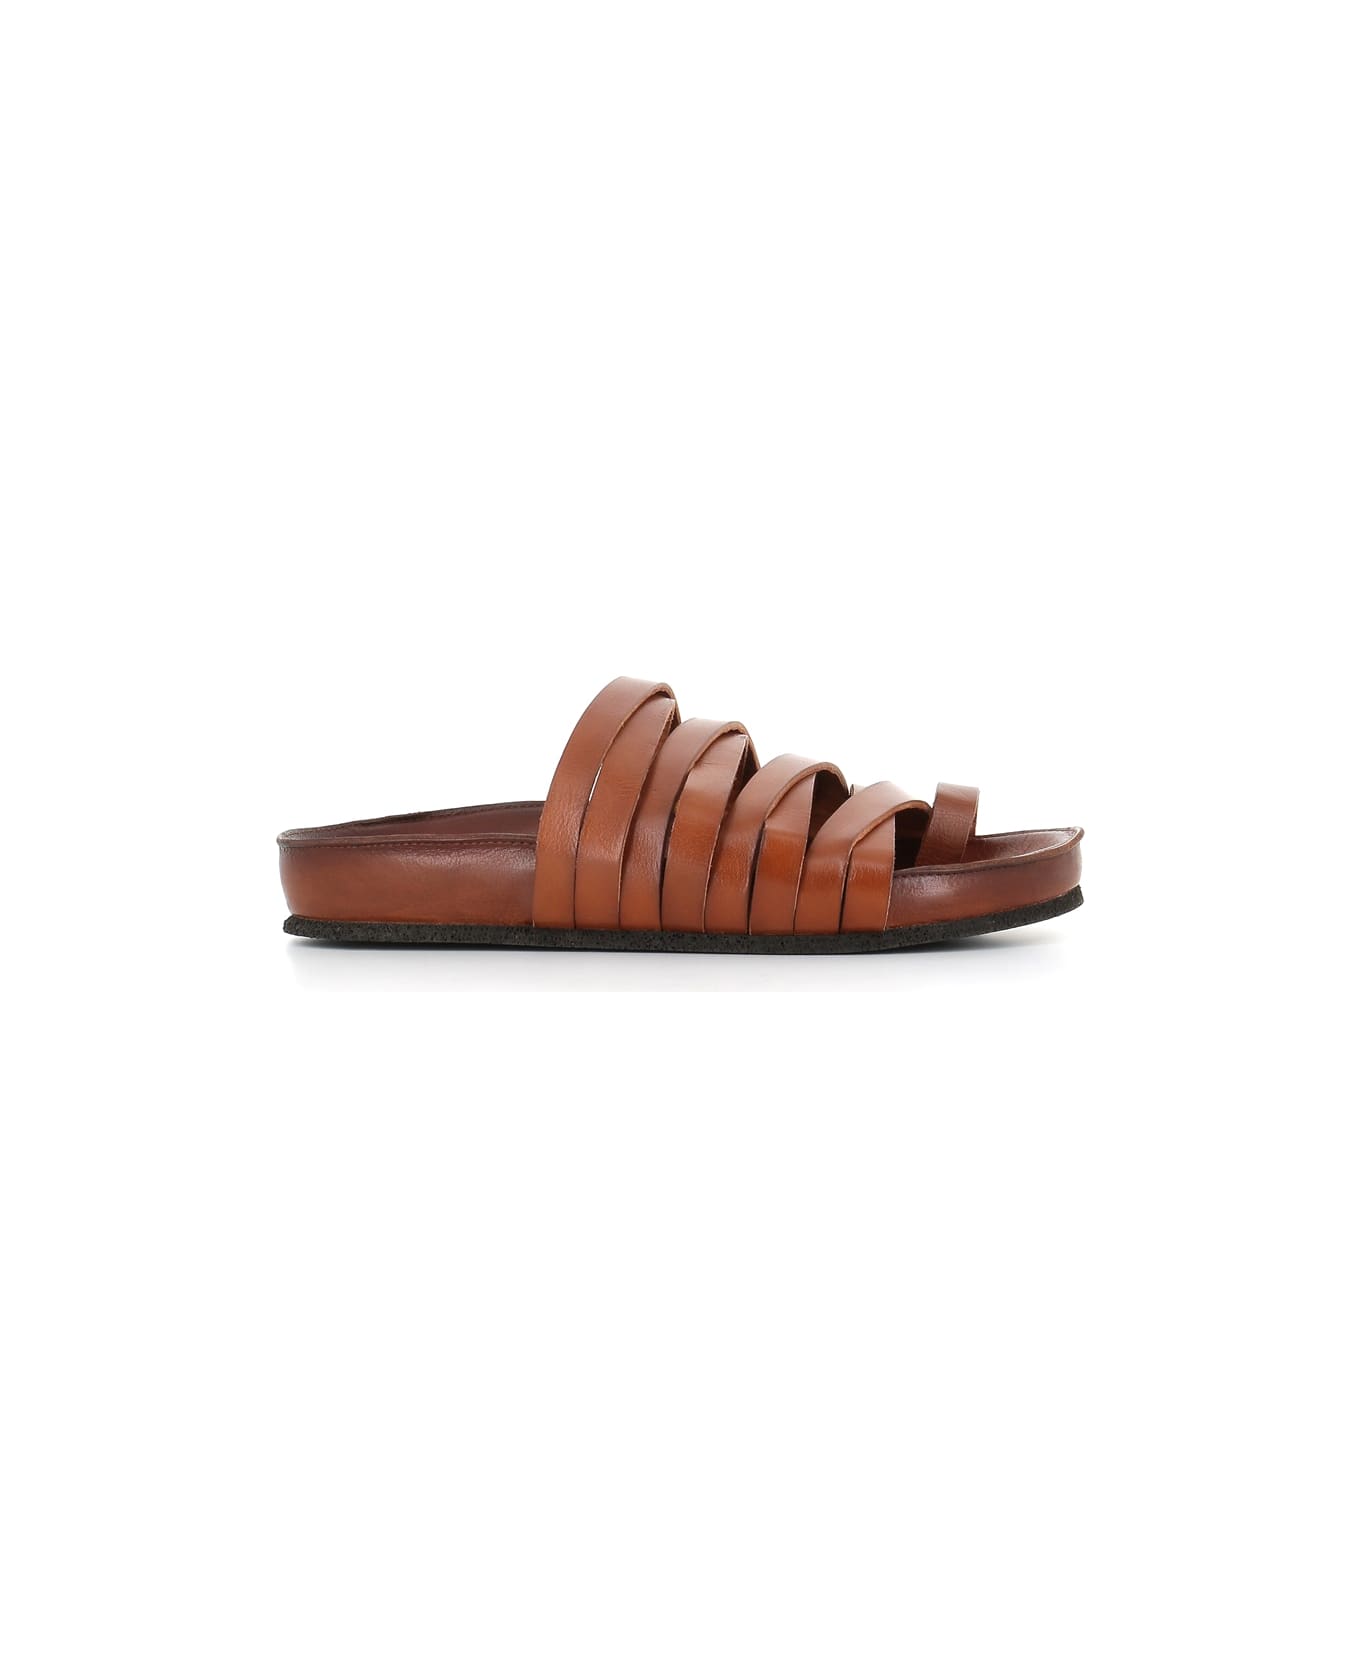 Pantanetti Sandal 17078e - Leather サンダル